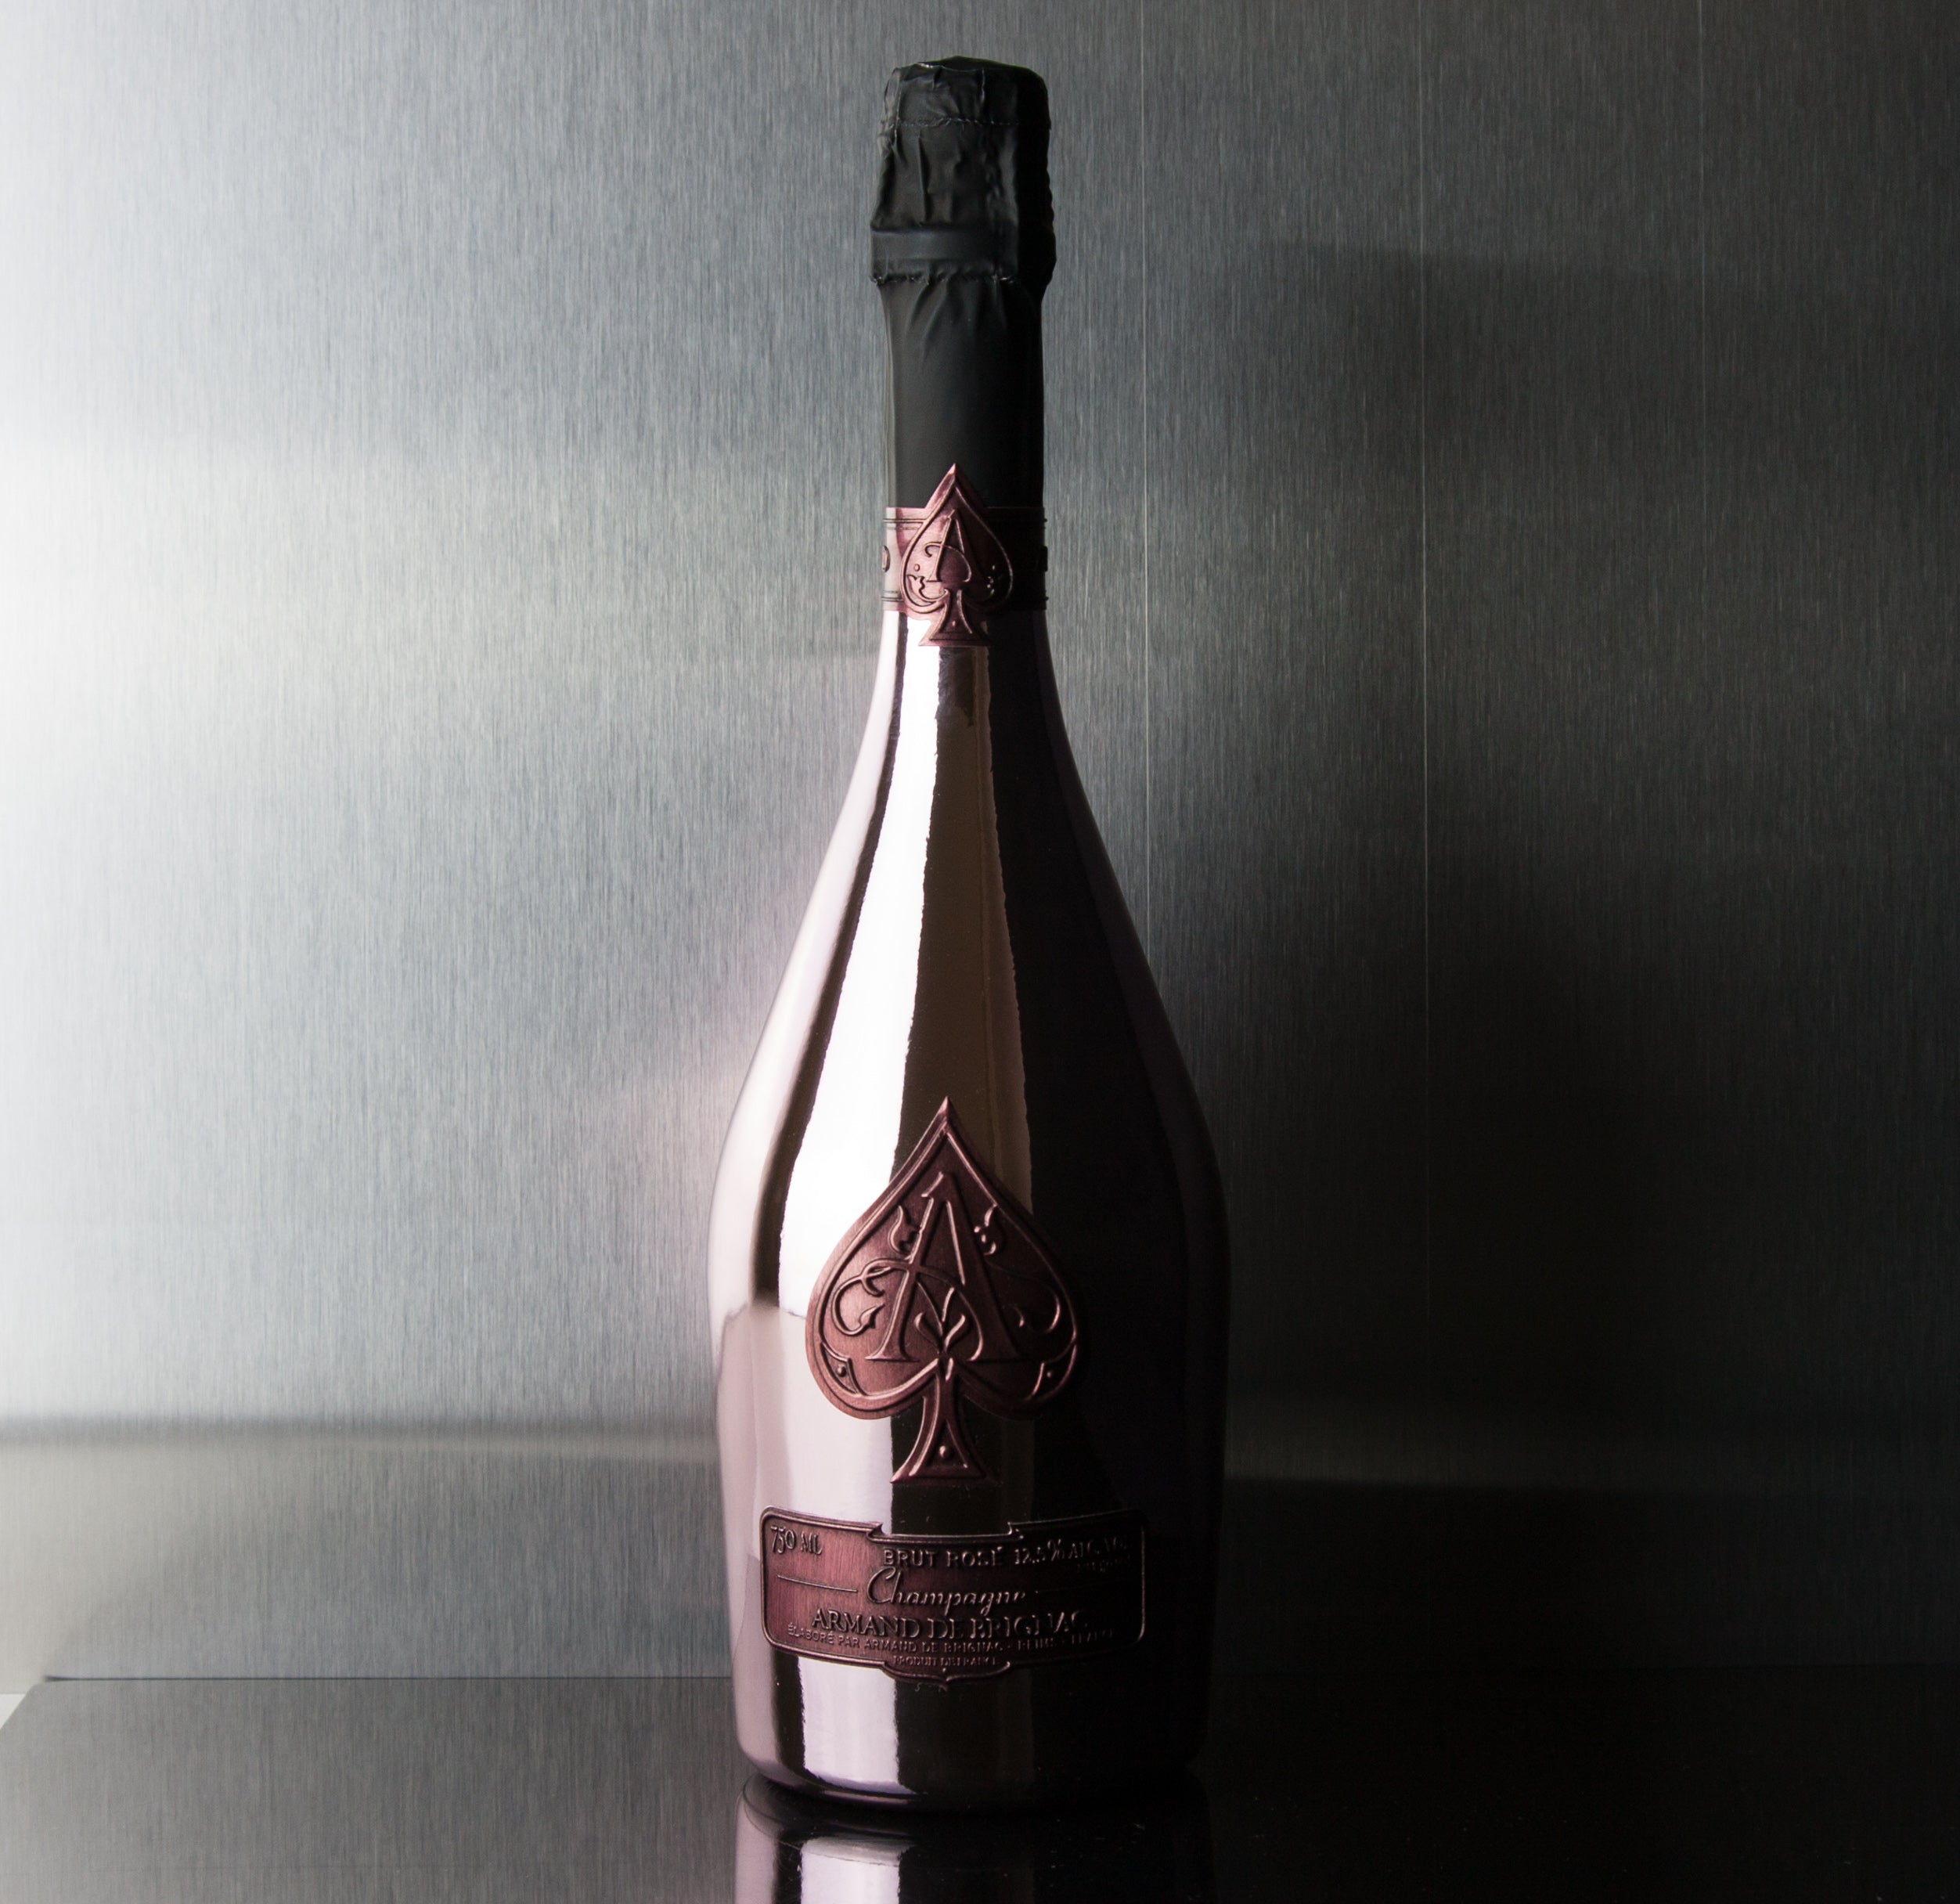 Champagne Ruinart Rosé  Champagne online - GLUGULP!